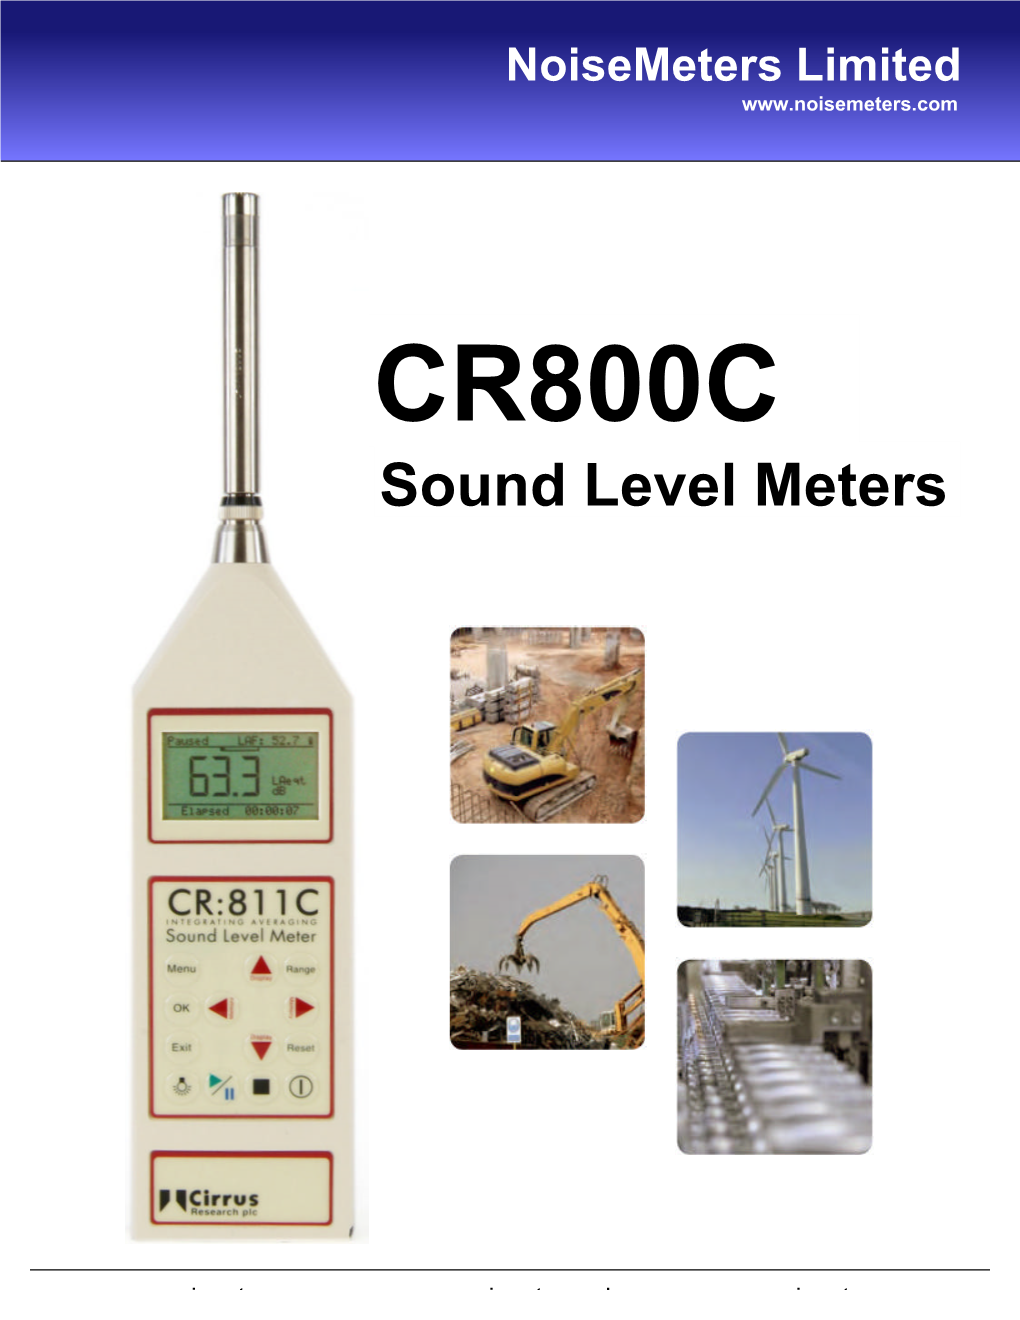 CR800C Sound Level Meters